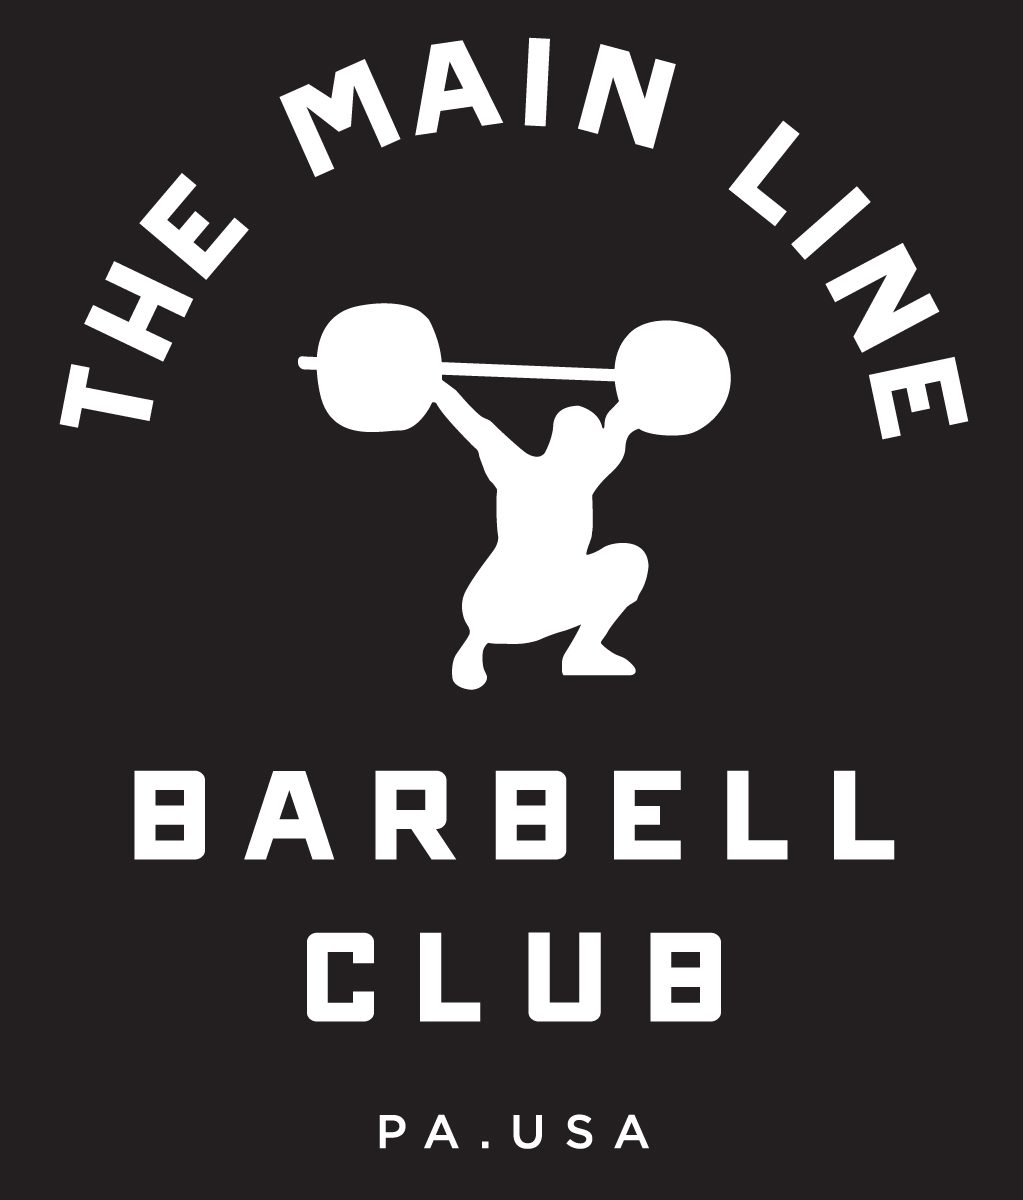 Week of 11.7.16 Barbell Club